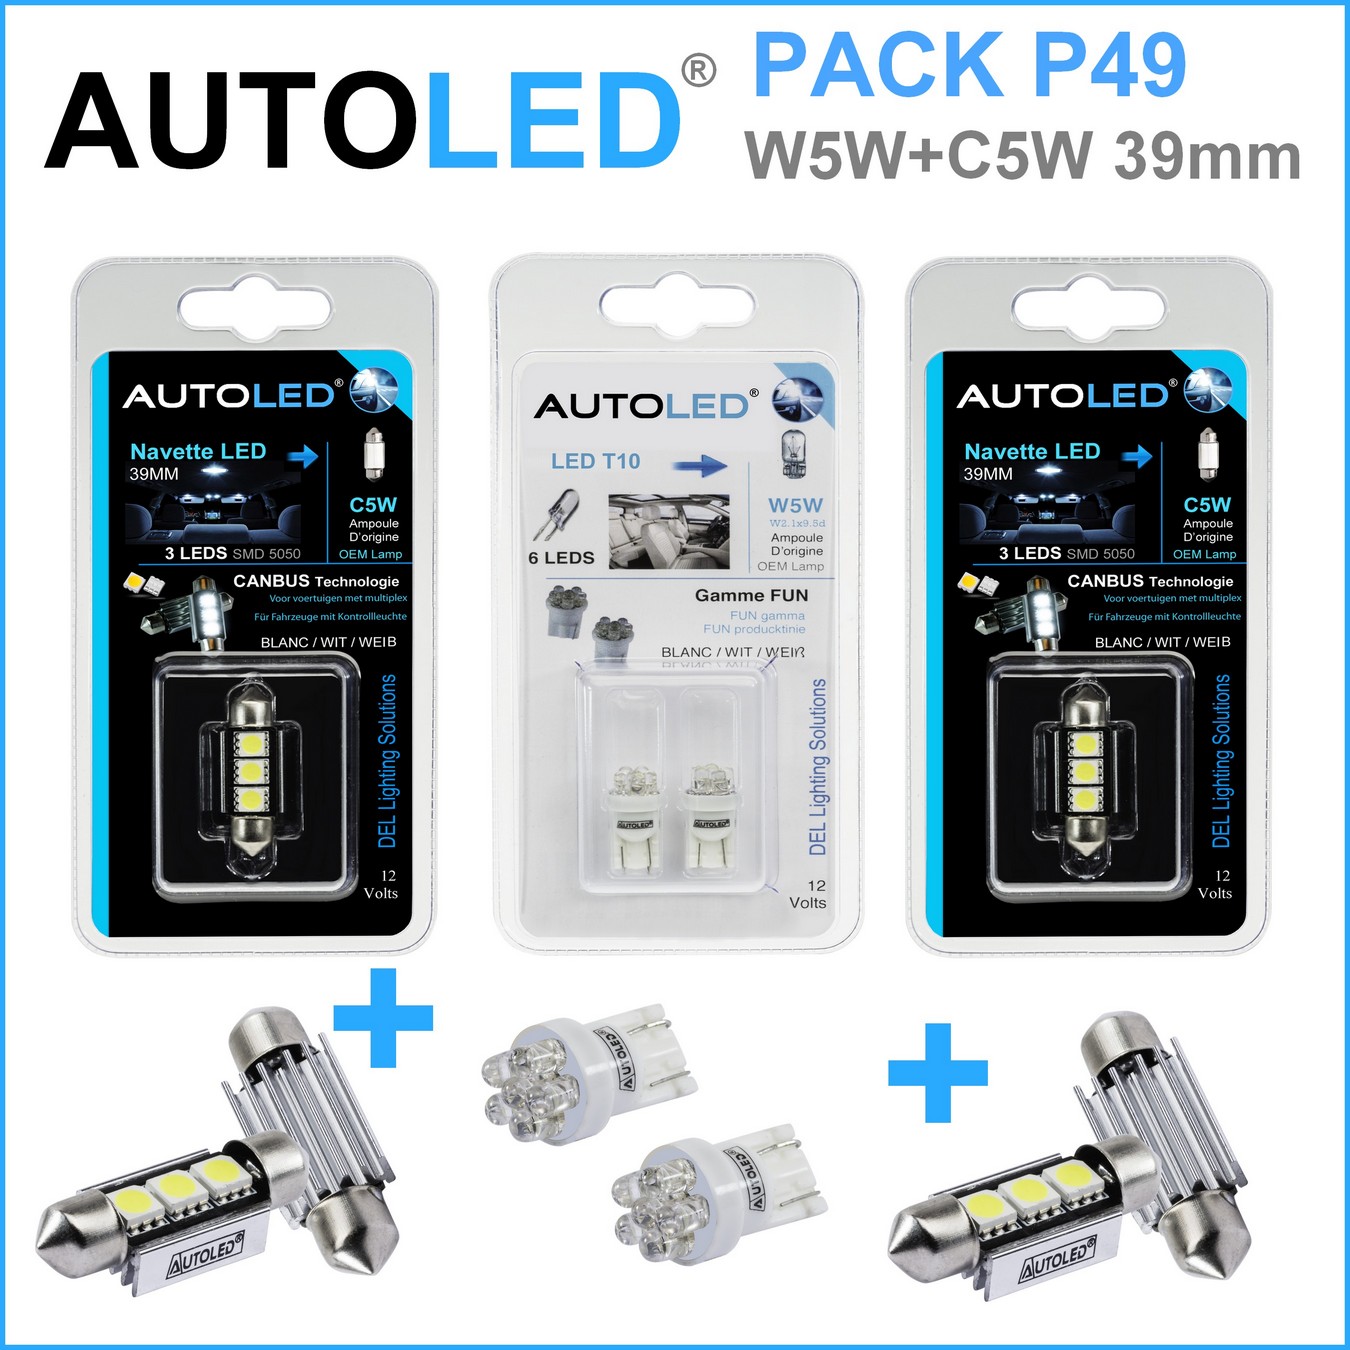 Pack-4-ampoules-led-blanc-eclairage-habitacle-plaque-plafonnier-boite -a gants-coffre-t10-6-leds-w5w-navette-c5w-c10w-39mm-canbus-3leds-blanc-eclairage-led-autoled-pack-p49.1